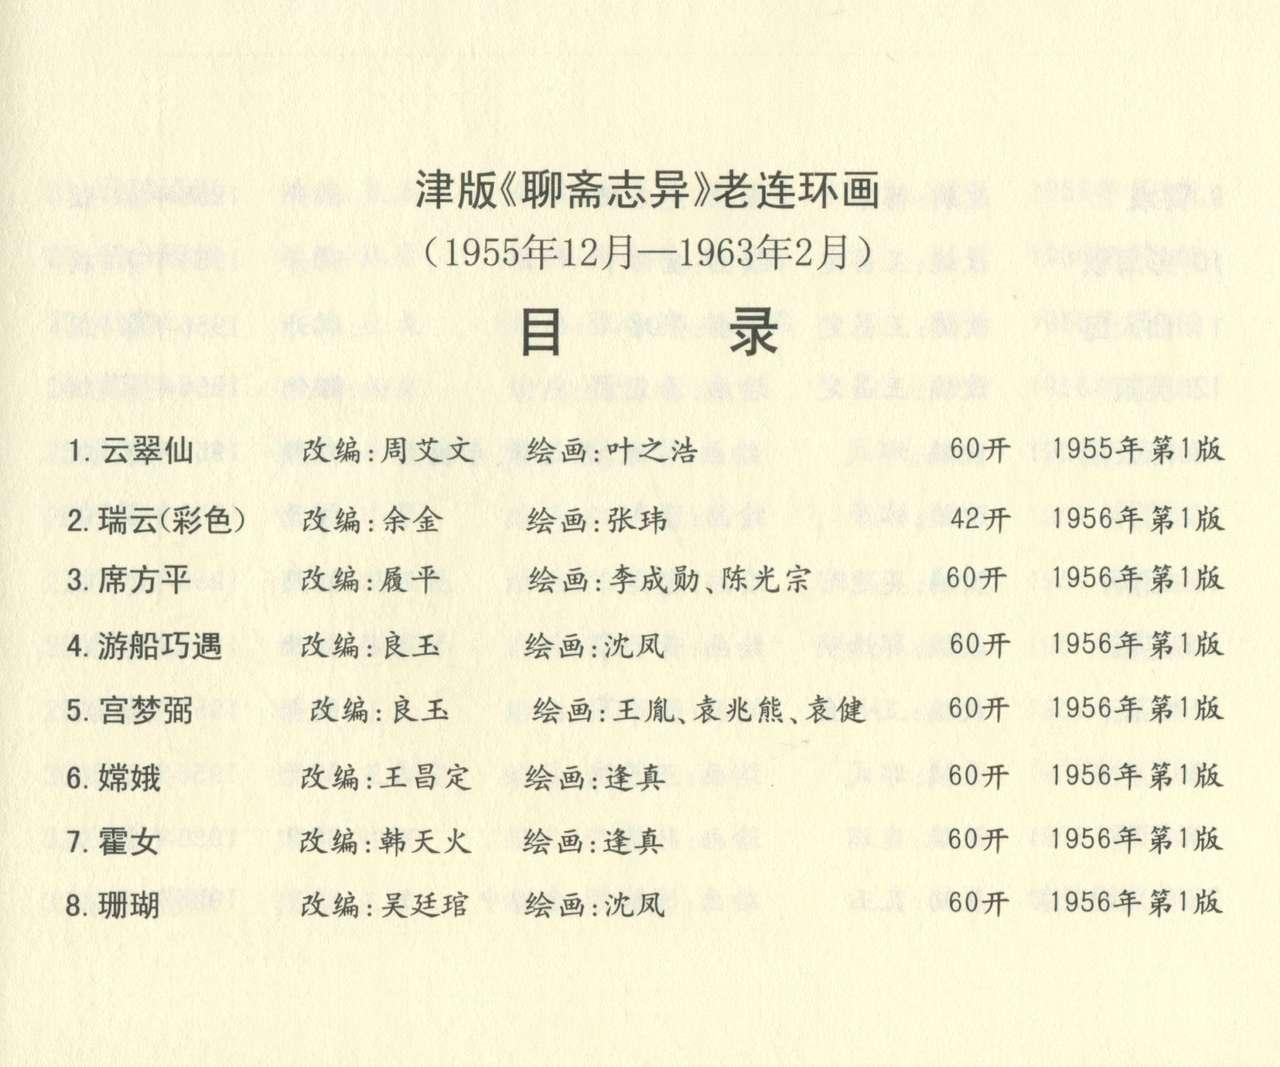 聊斋志异 张玮等绘 天津人民美术出版社 卷二十一 ~ 三十 677